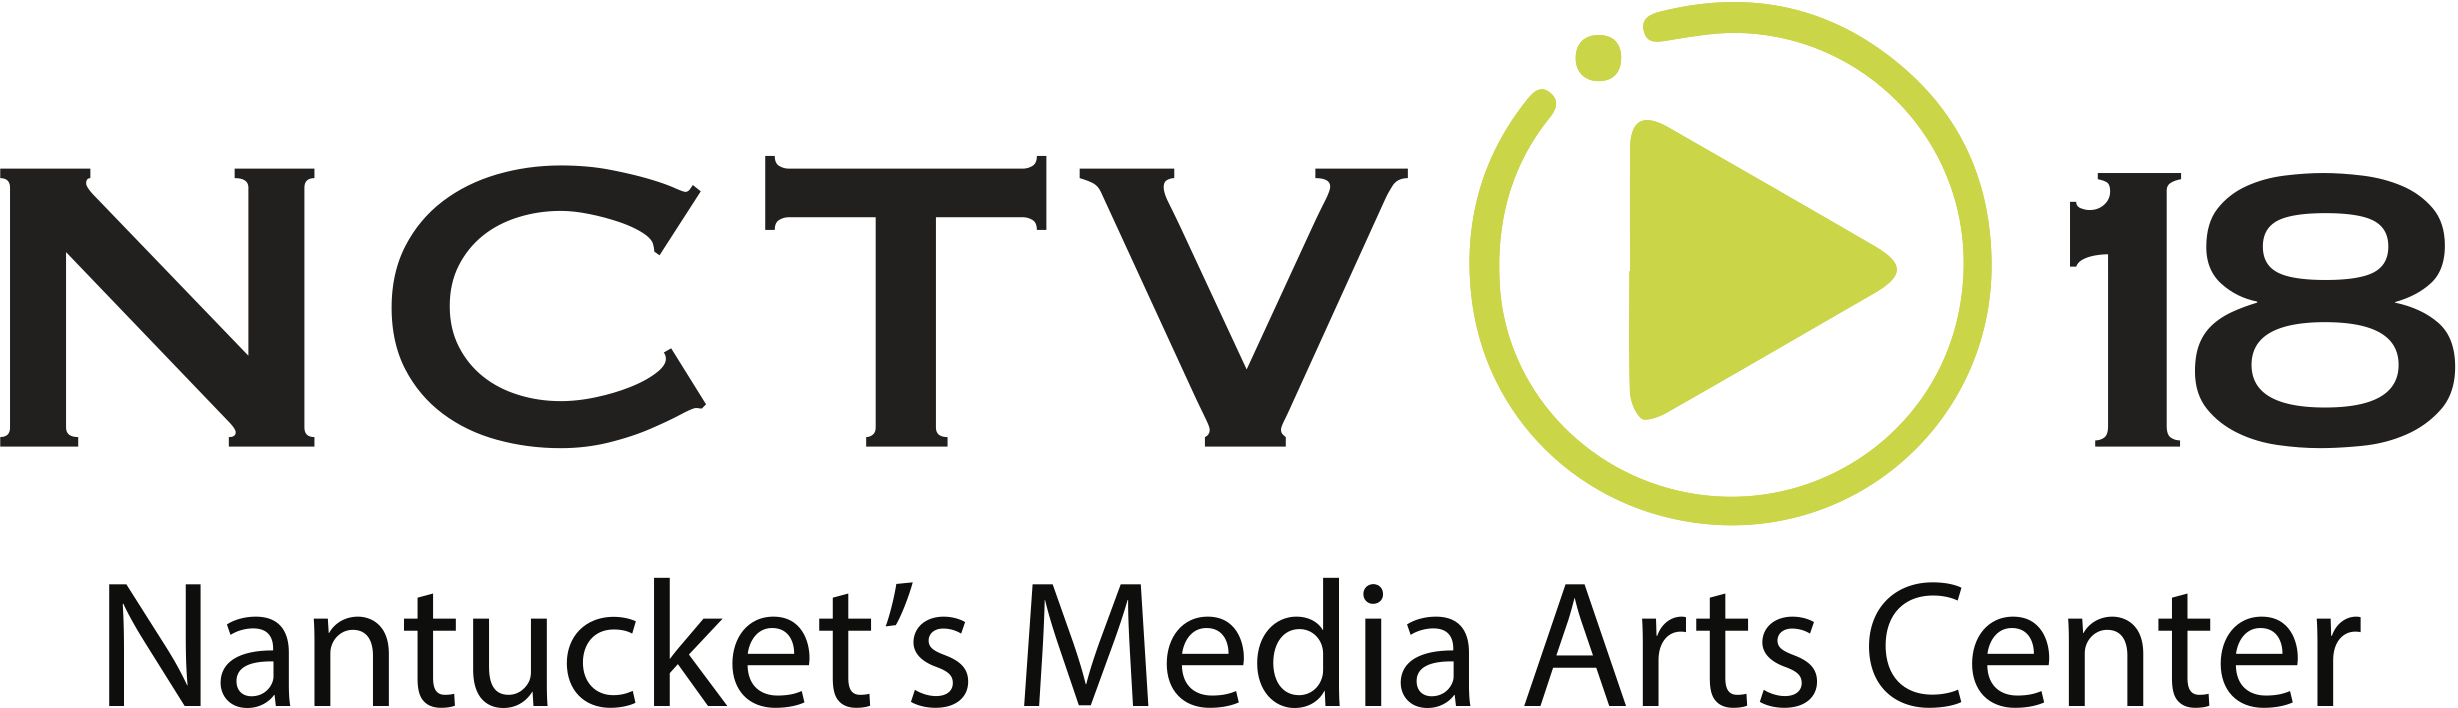 NCTV Logo.jpg